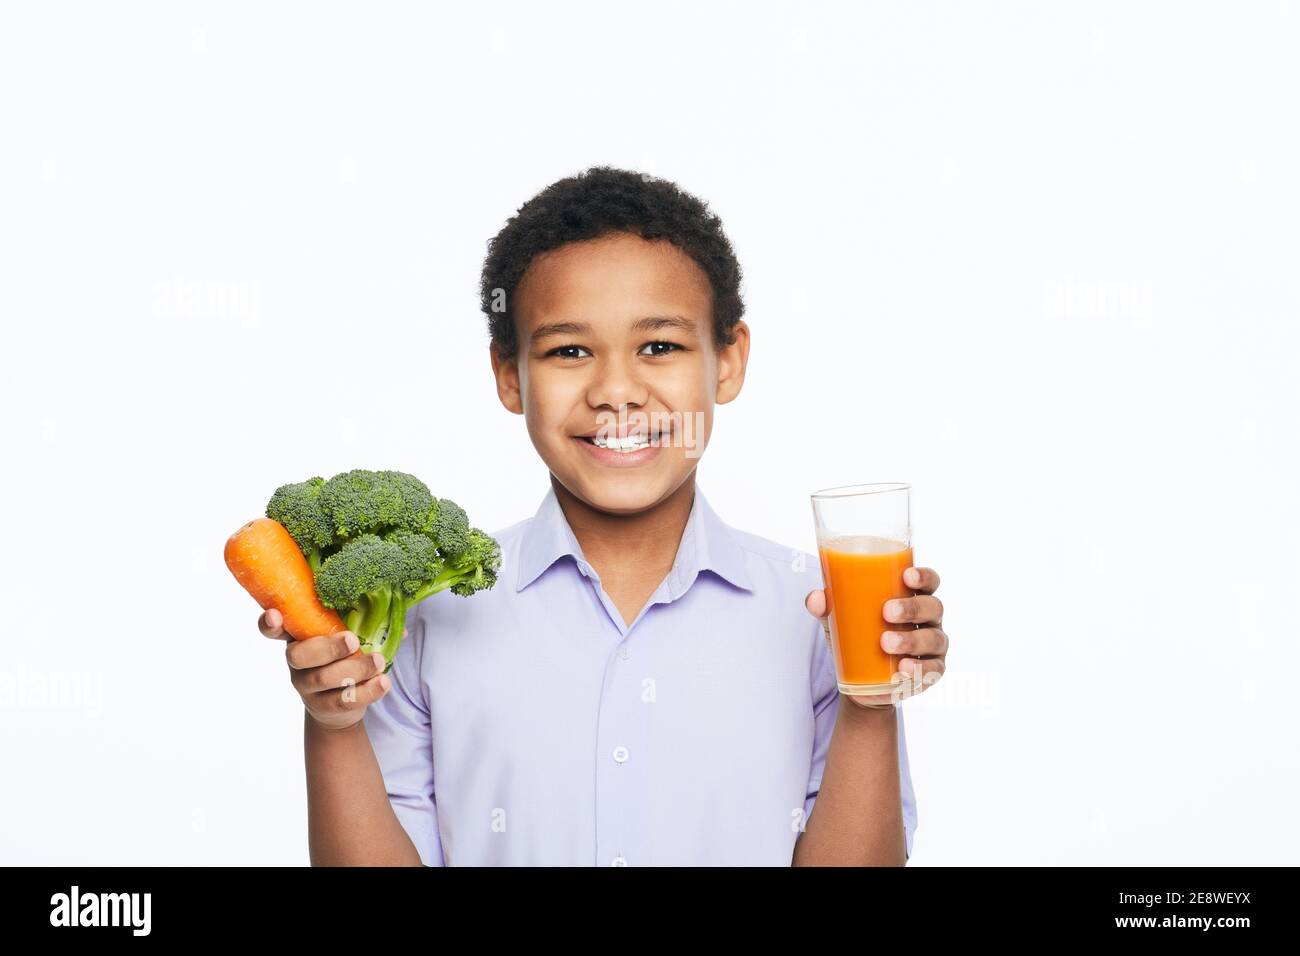 Der afroamerikanische Junge hält Karotten, Brokkoli und Karottensaft auf weißem Hintergrund. Gesund essen für Kinder Stockfoto